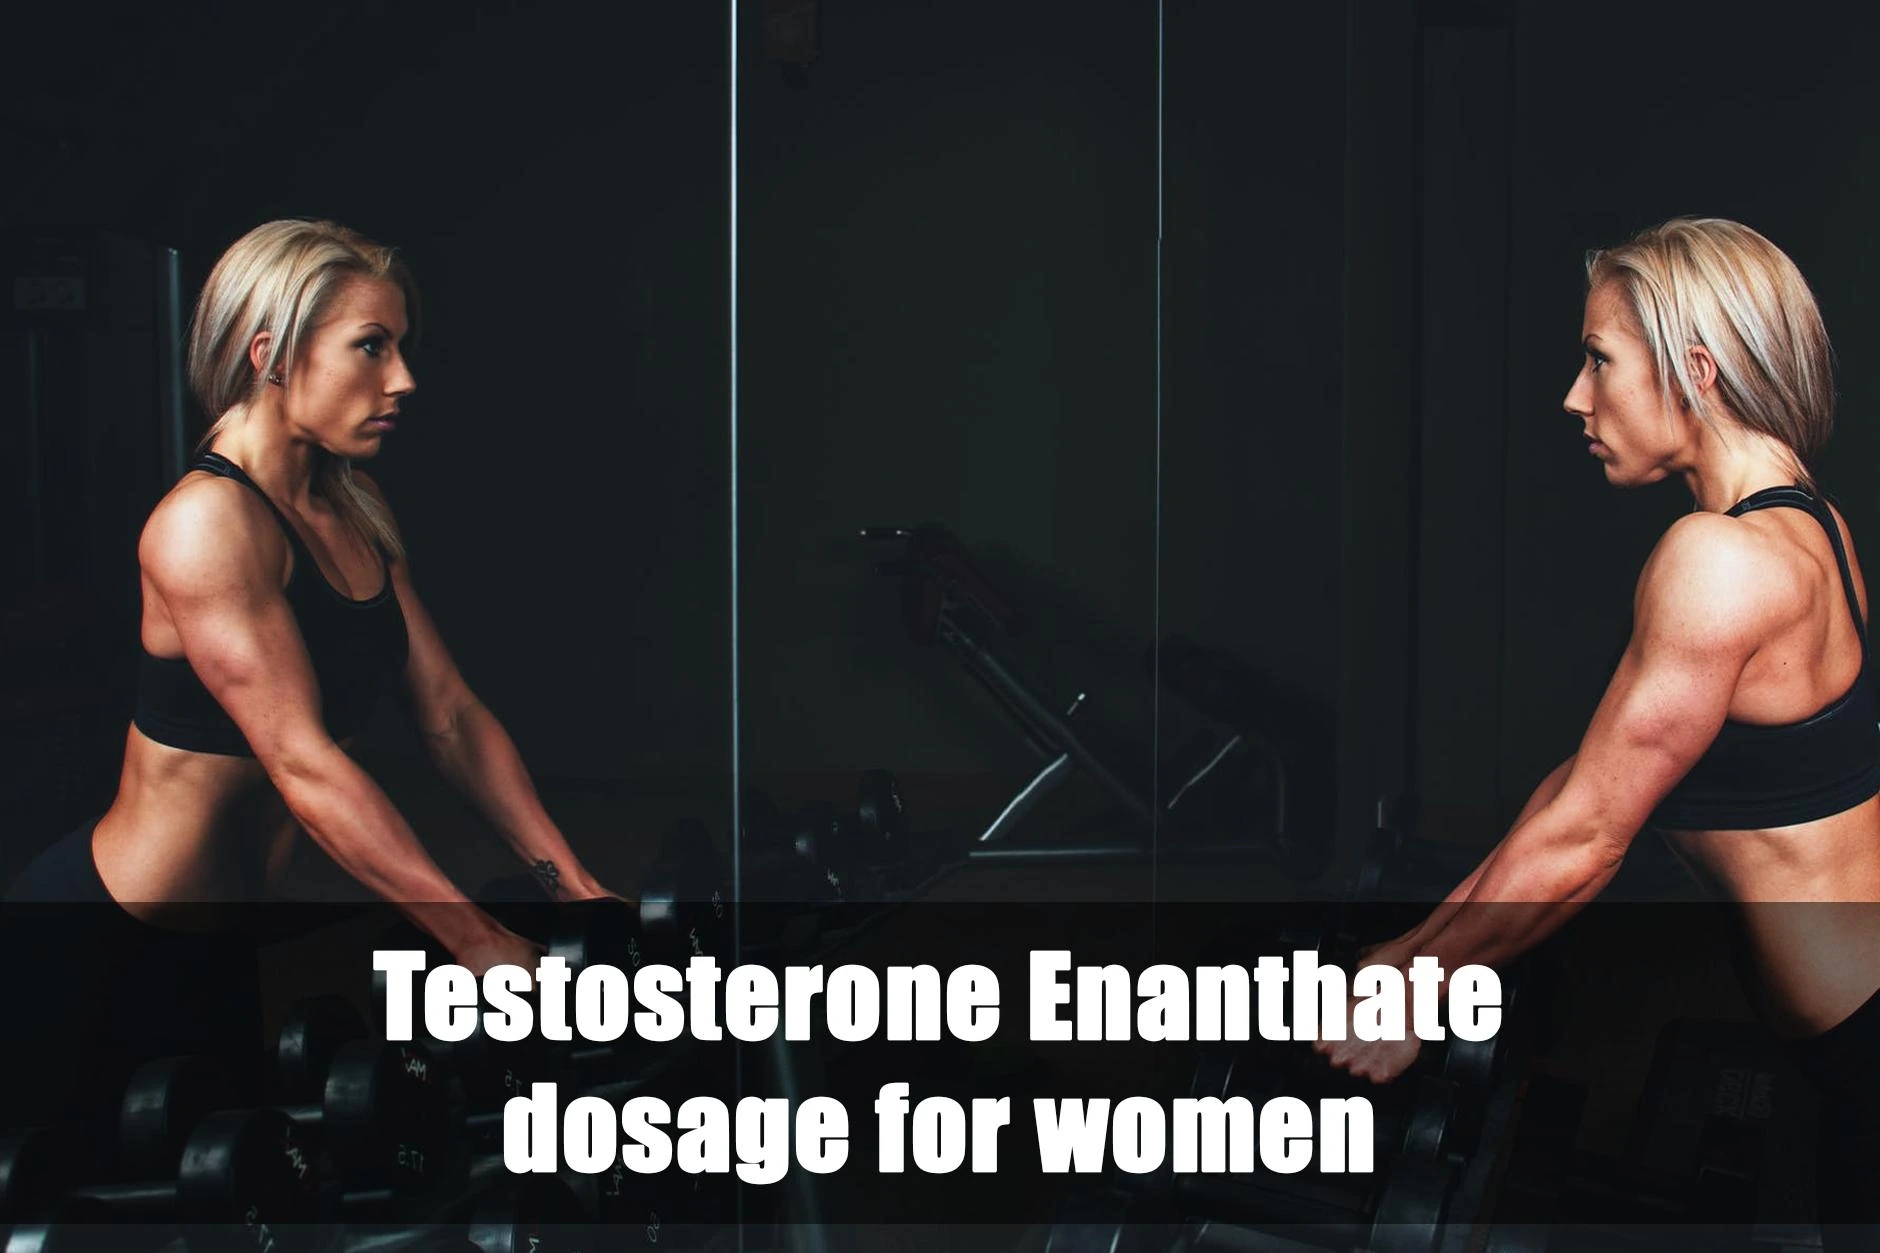 Dosaggio di testosterone enantato per le donne